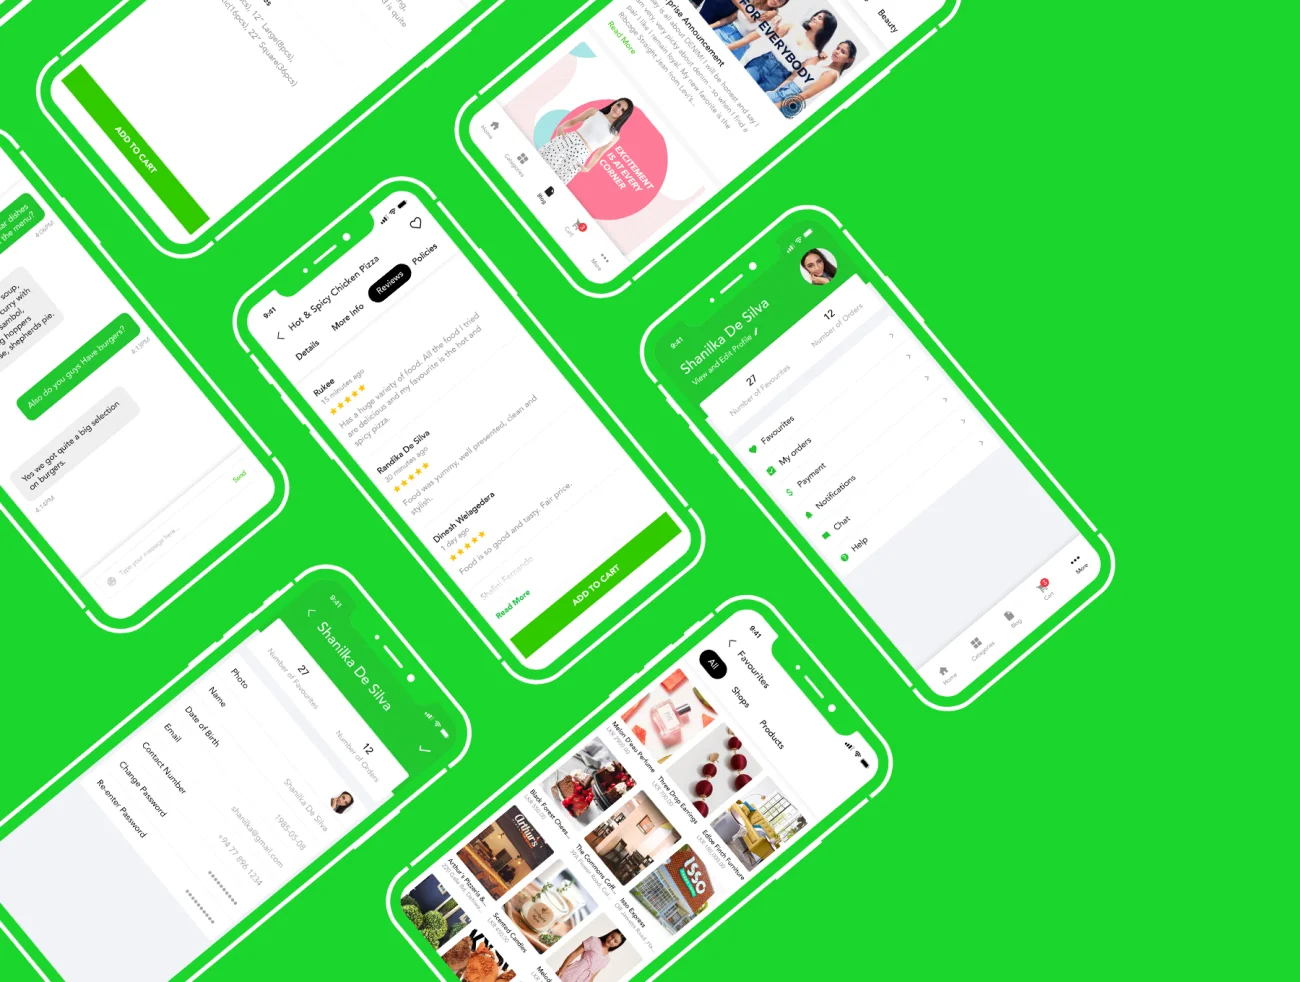 Vibe Mobile Application UI Kit PSD 绿色美食应用UI套件PSD-UI/UX-到位啦UI